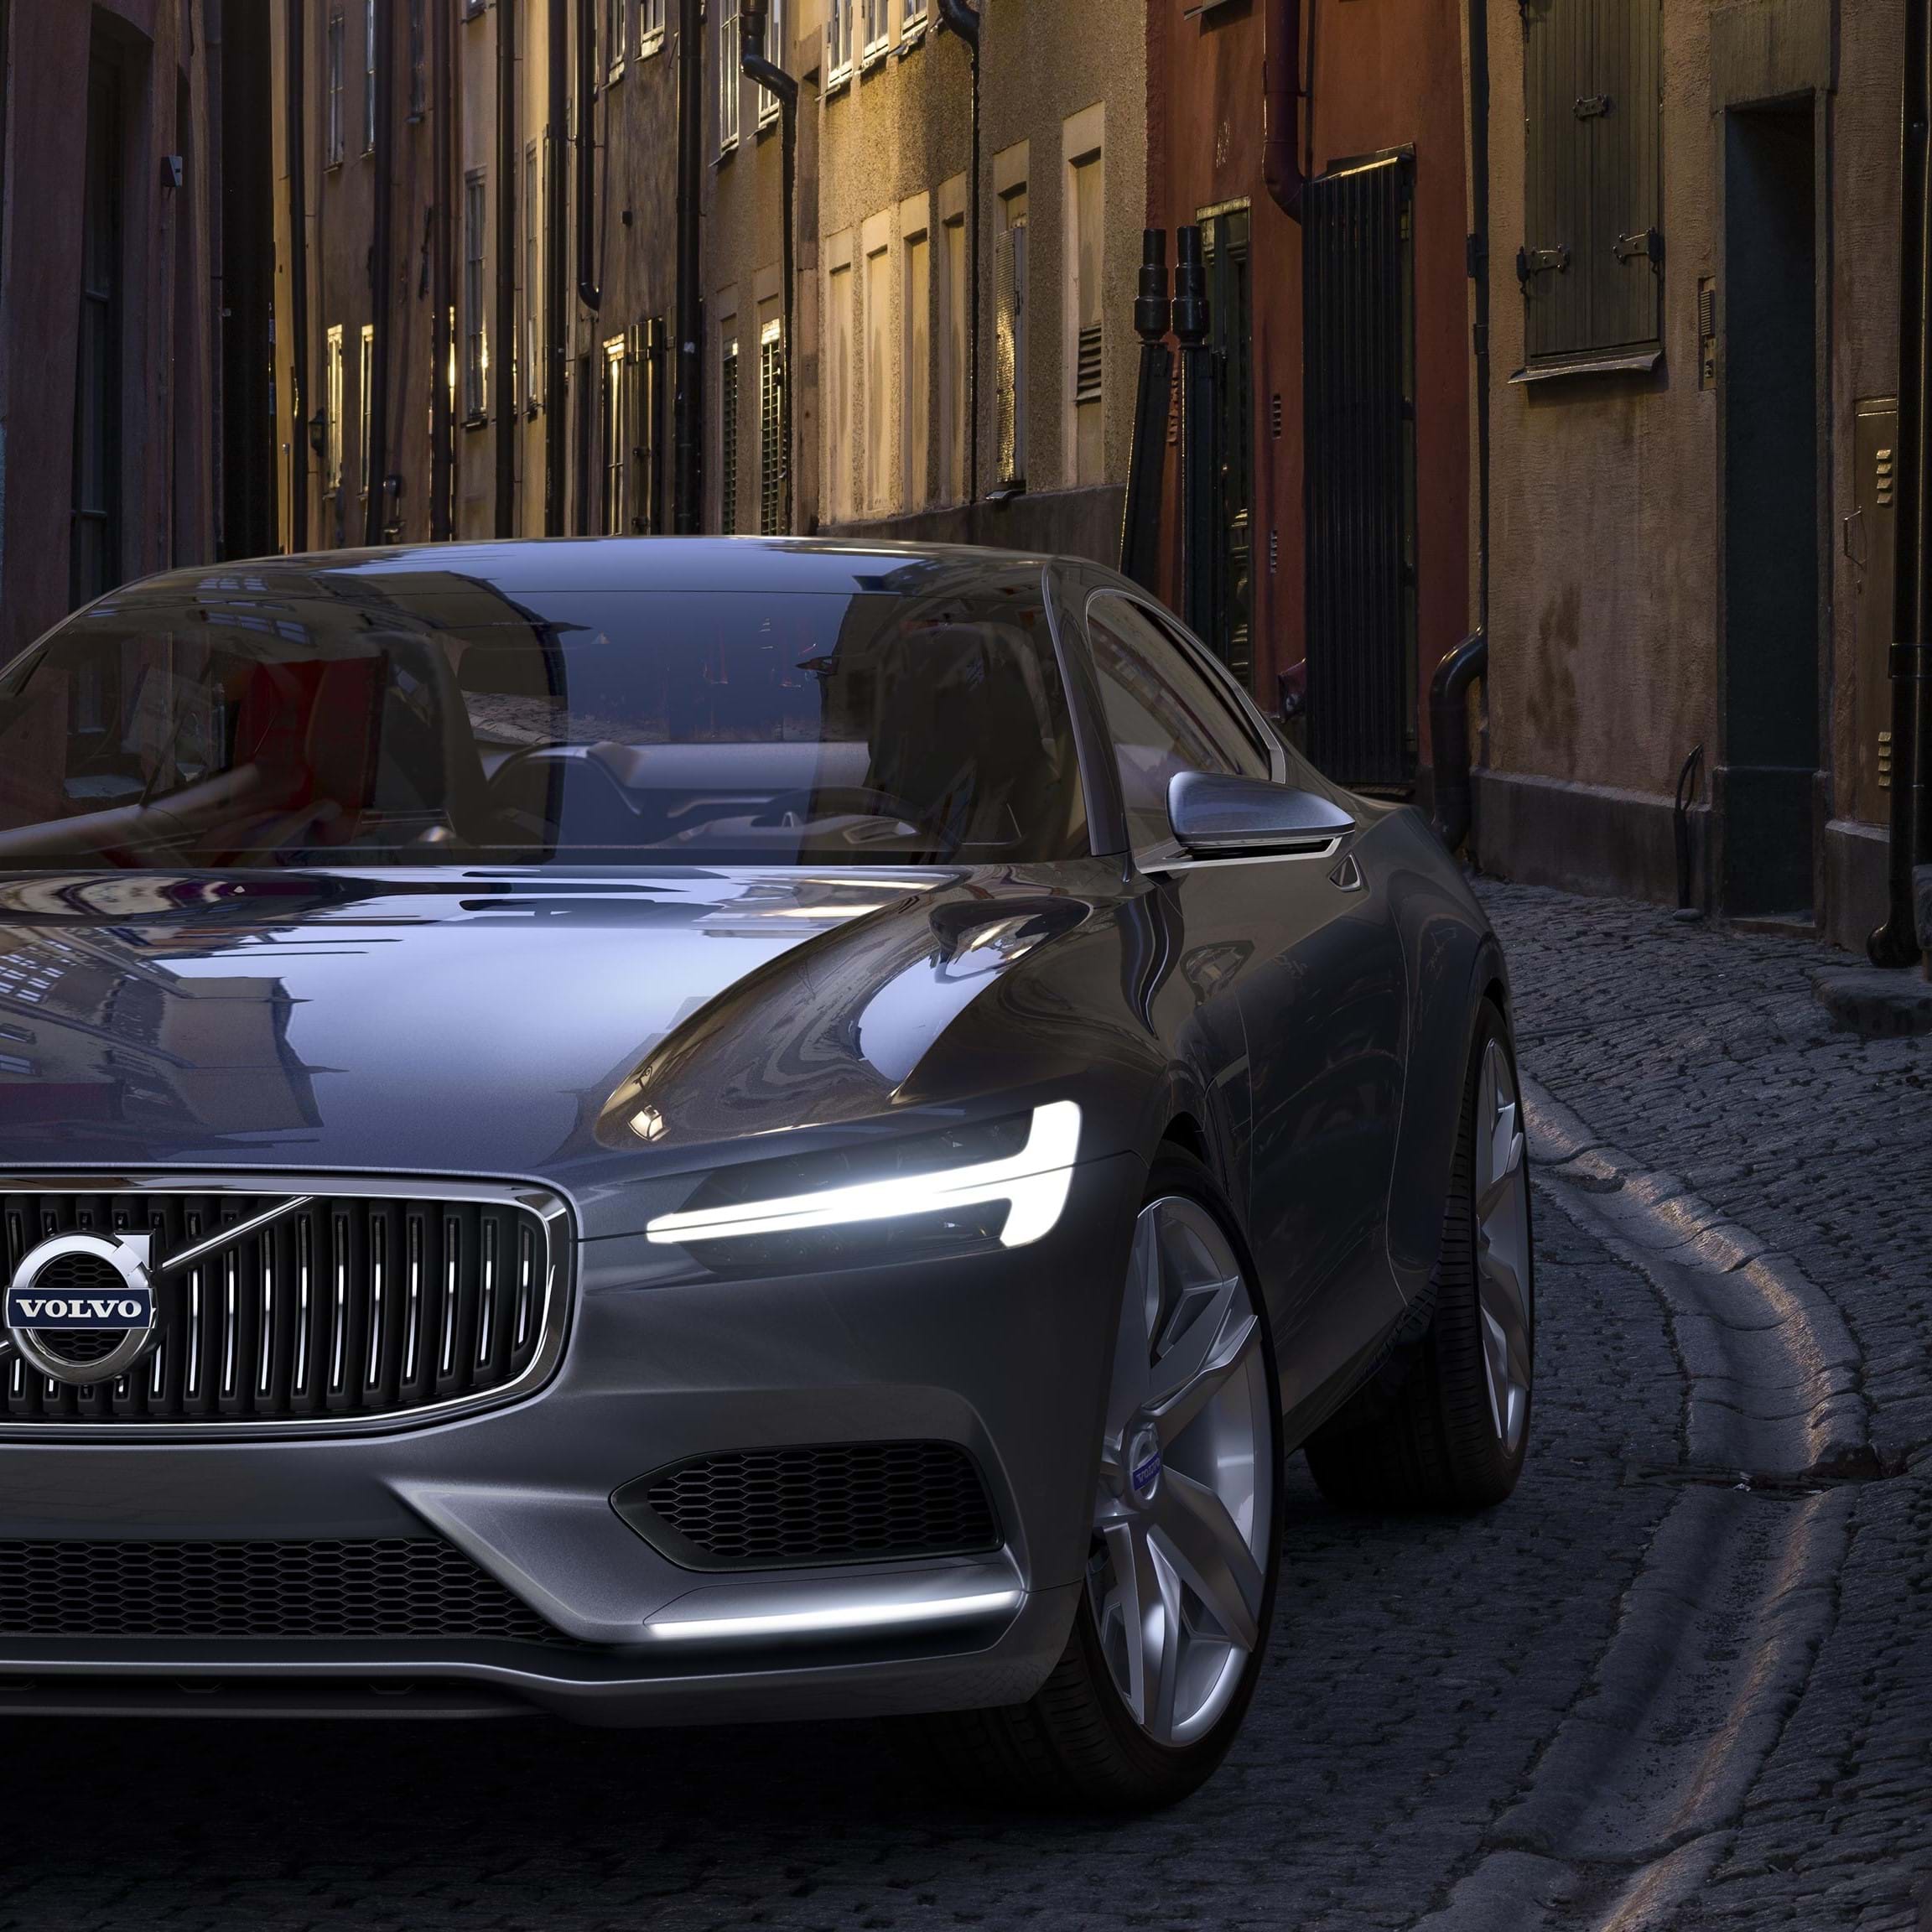 Volvo Concept Coupe grigia in marcia su una strada urbana acciottolata